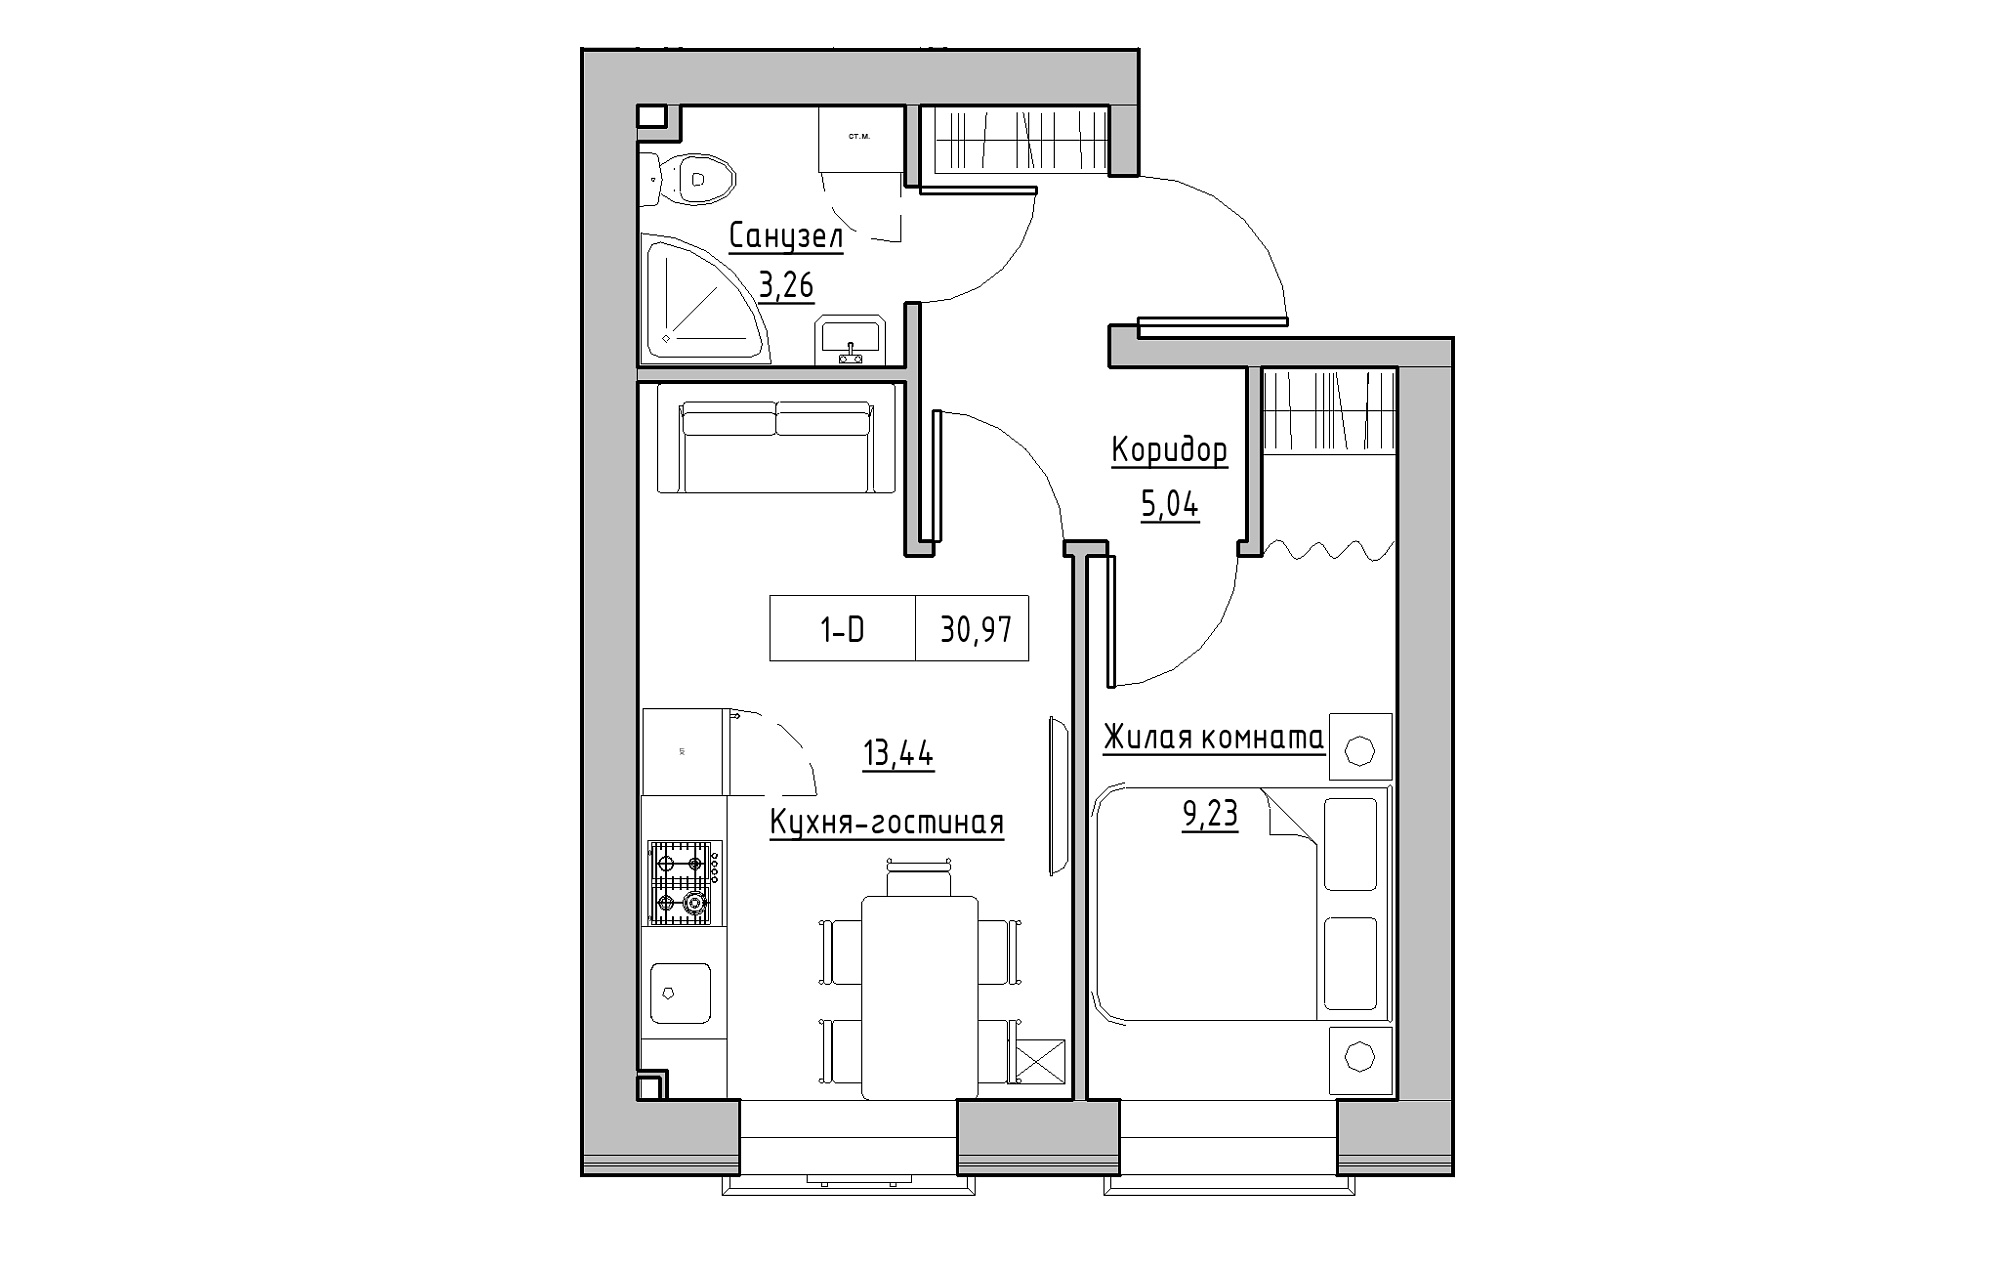 Планування 1-к квартира площею 30.97м2, KS-018-01/0003.